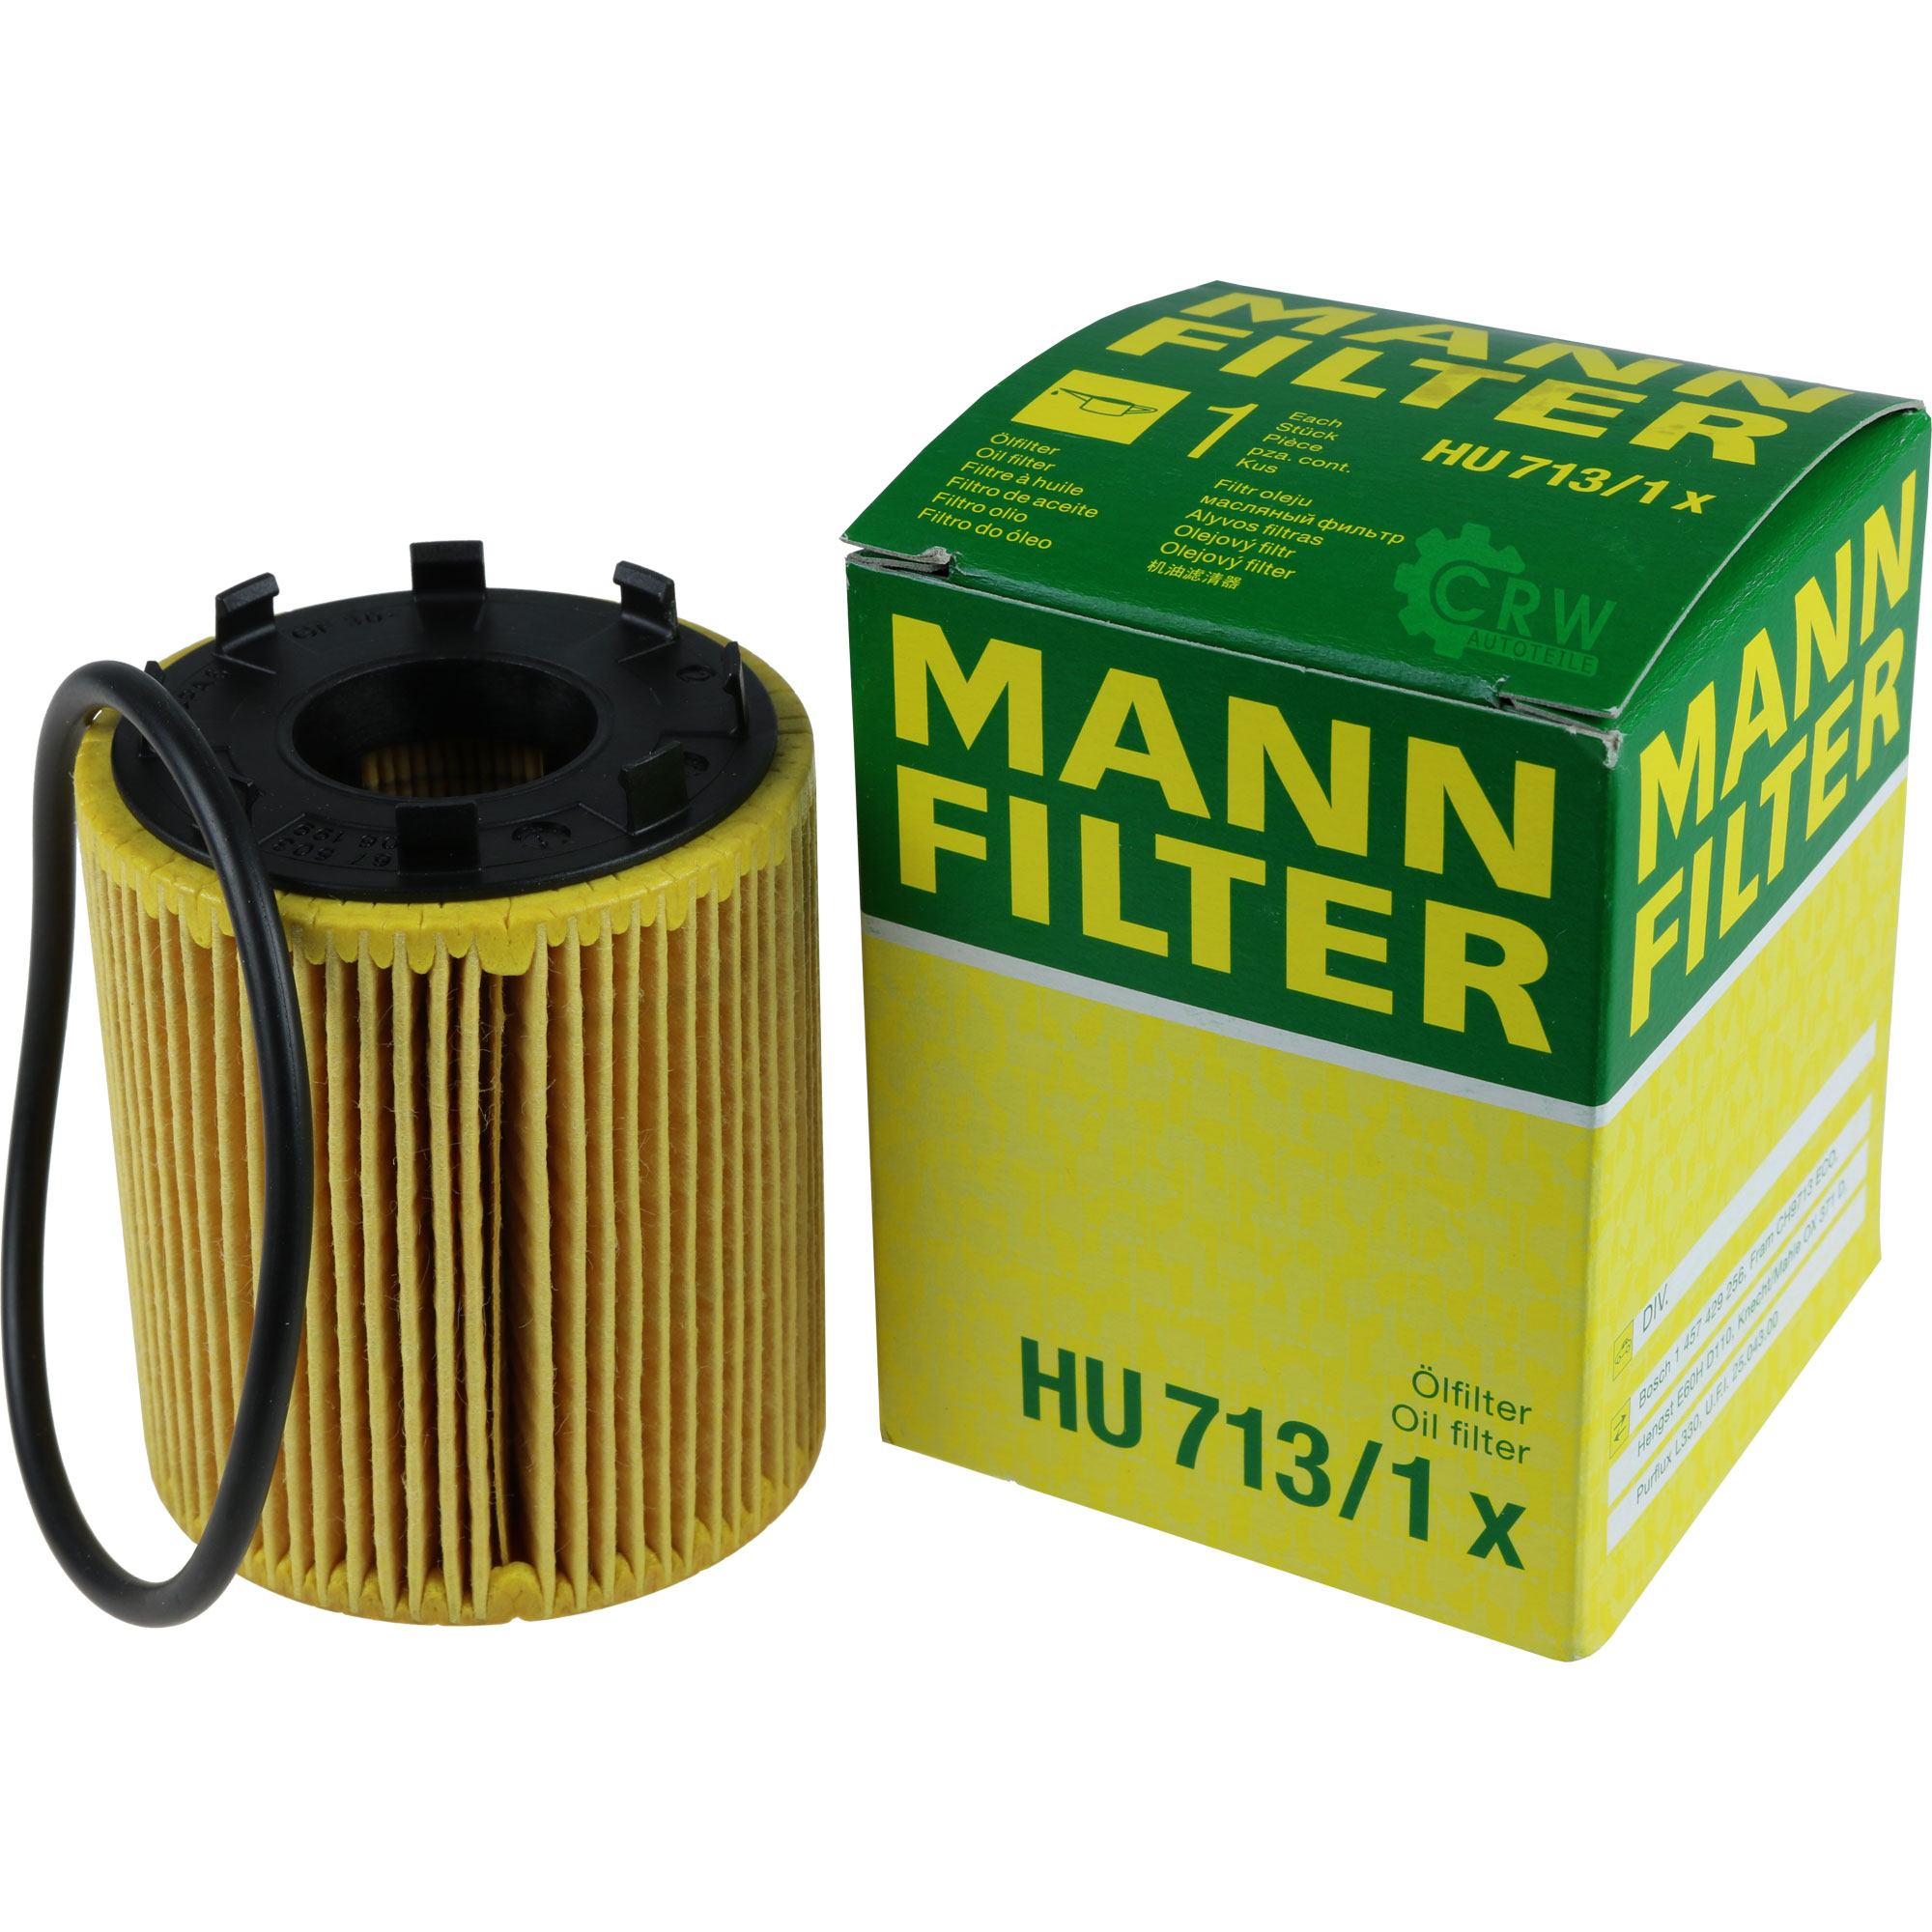 MANN-FILTER Ölfilter HU 713/1 x Oil Filter